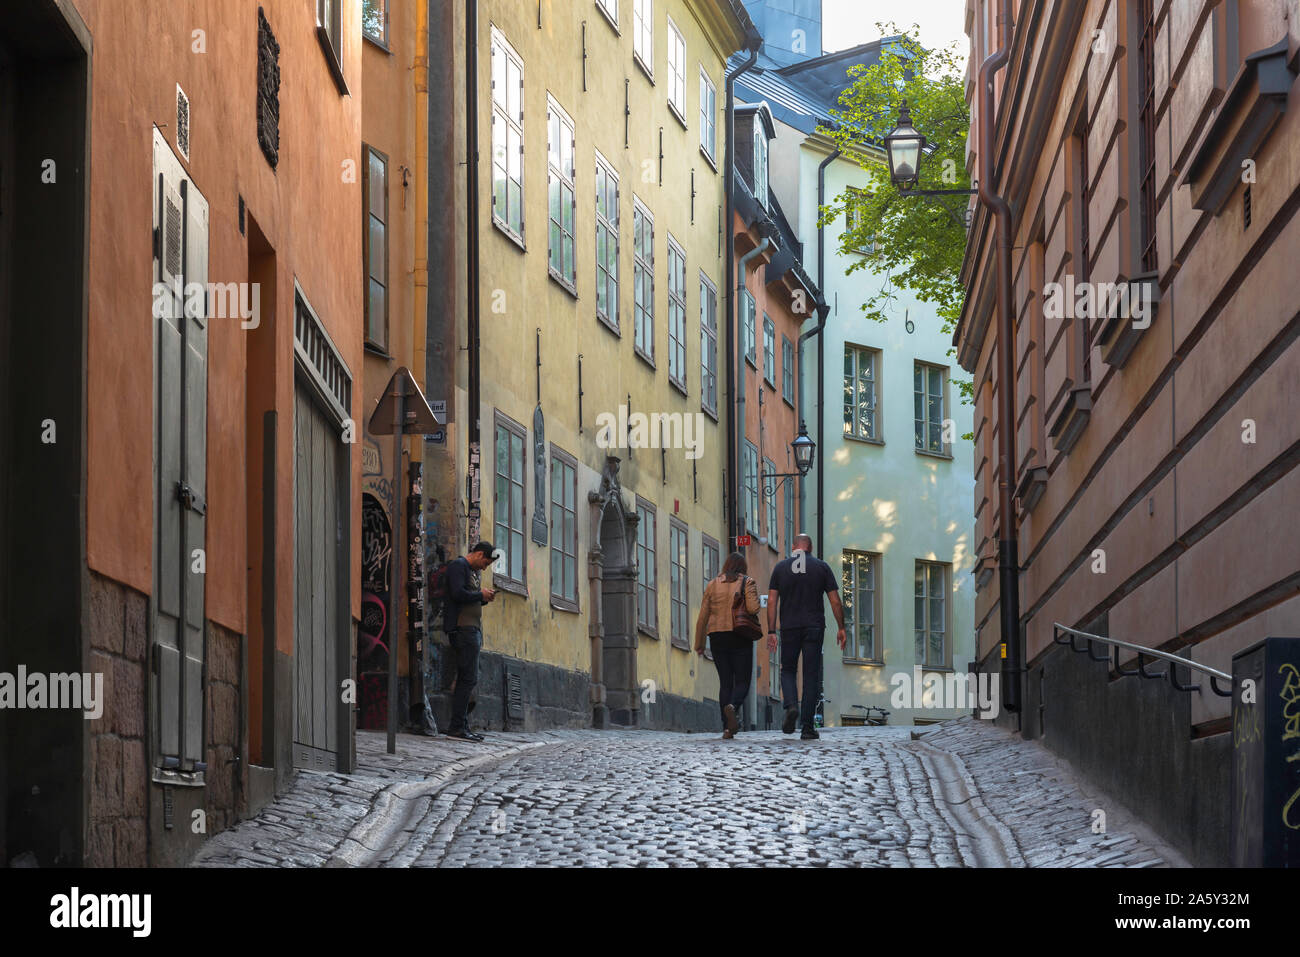 La vieille ville de Stockholm, vue arrière de gens qui marchent le long d'une rue pavée typique dans le Gamla Stan (vieille ville) du centre de Stockholm, en Suède. Banque D'Images